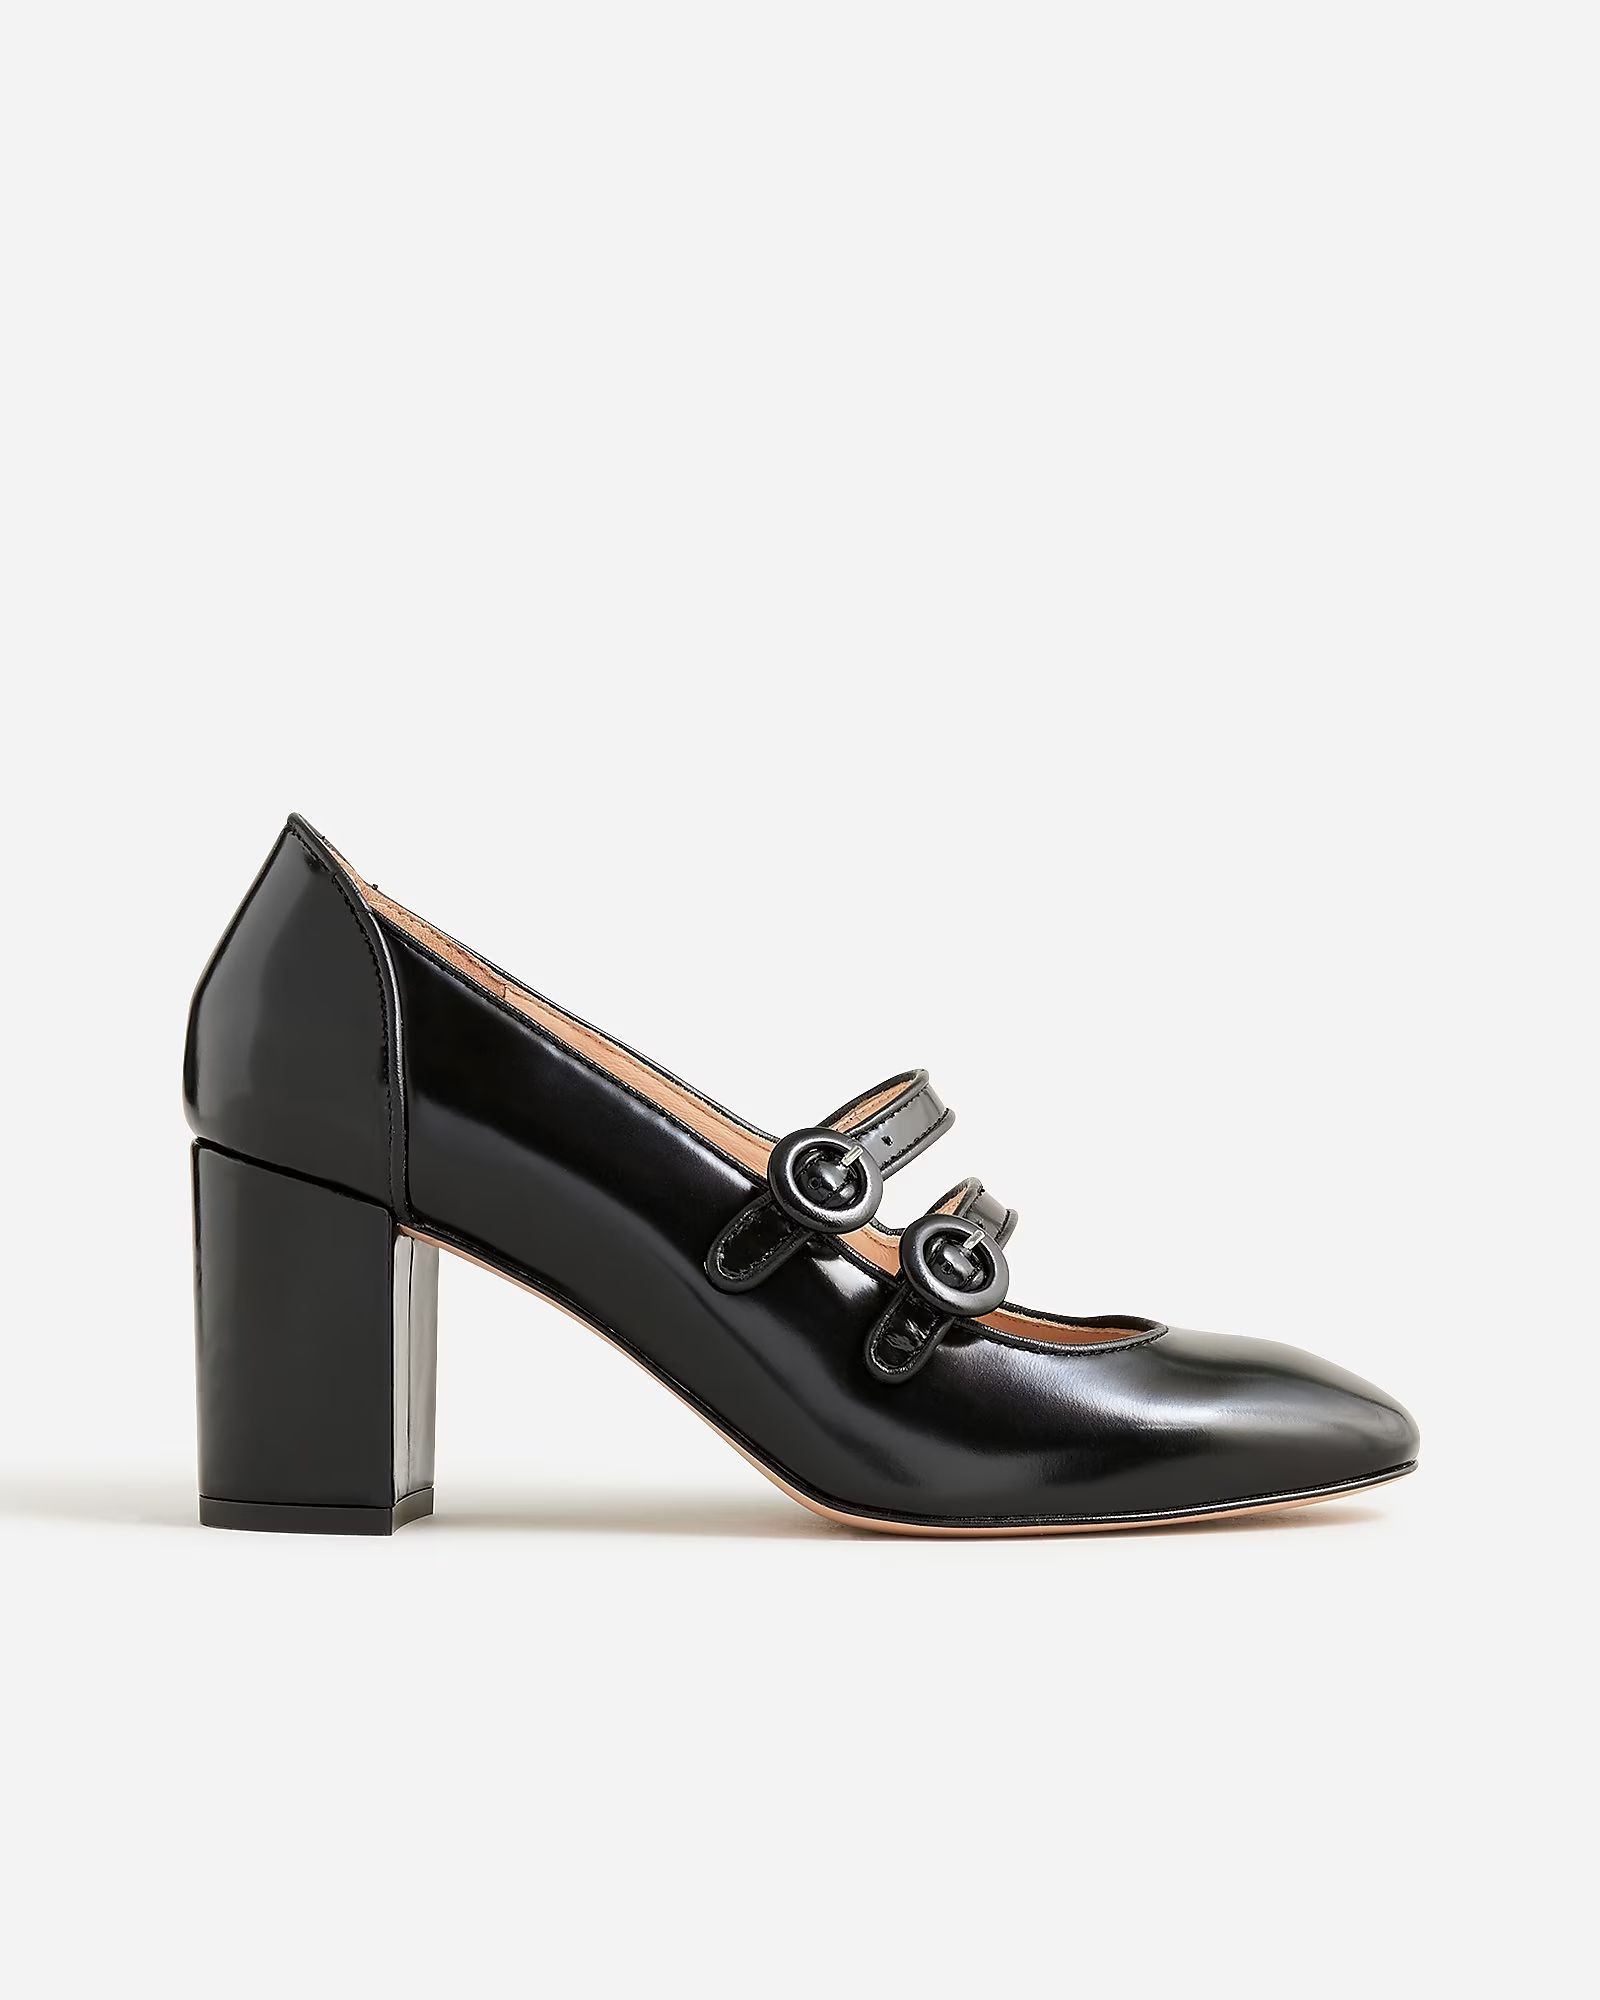 Maisie double-strap heels in Italian spazzolato leather | J.Crew US